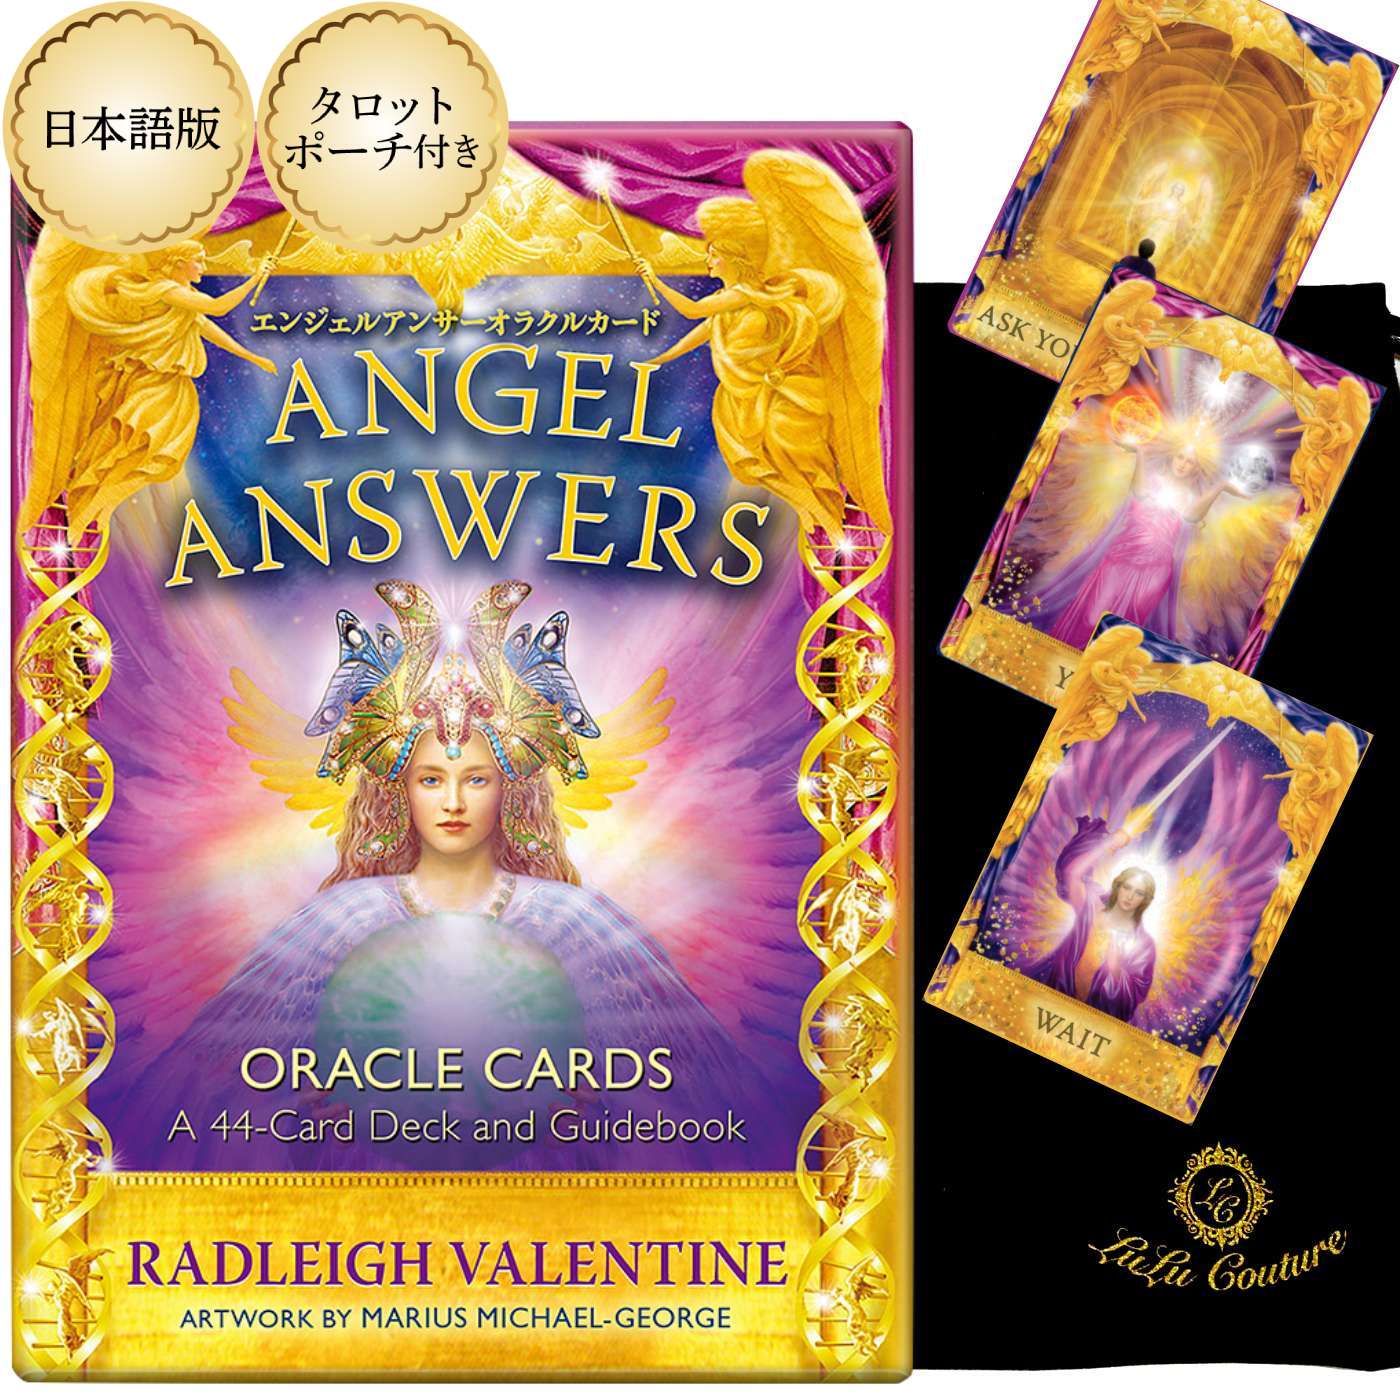 【日本語版】新装版 エンジェルアンサー オラクルカード ANGEL ANSWERS Oracle Cards タロット占い 日本語解説書付き ドリーン バーチュー 可愛い 宝石 星 輝き 美しい 天使 妖精 女性 人気 入…